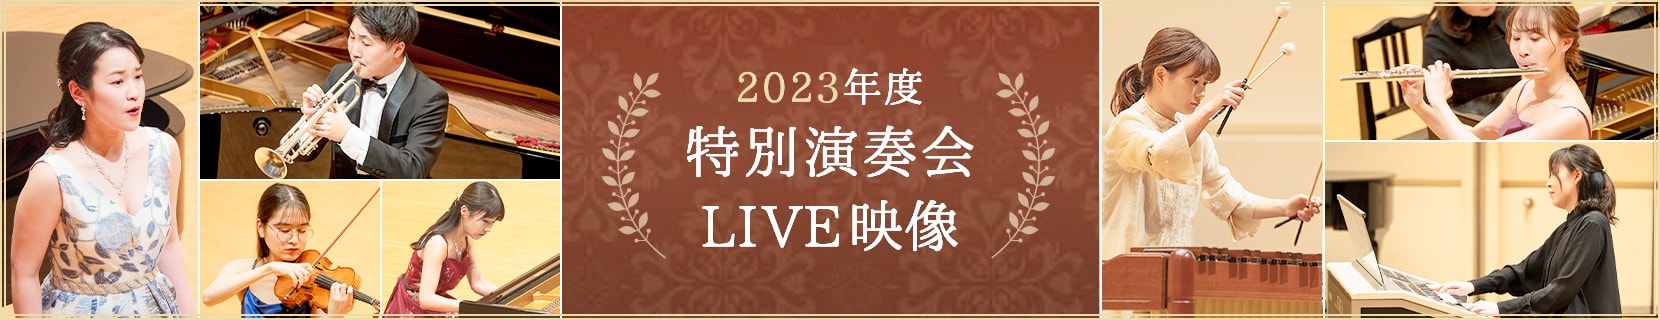 2023年度 大学院グランプリ特別演奏会 LIVE映像